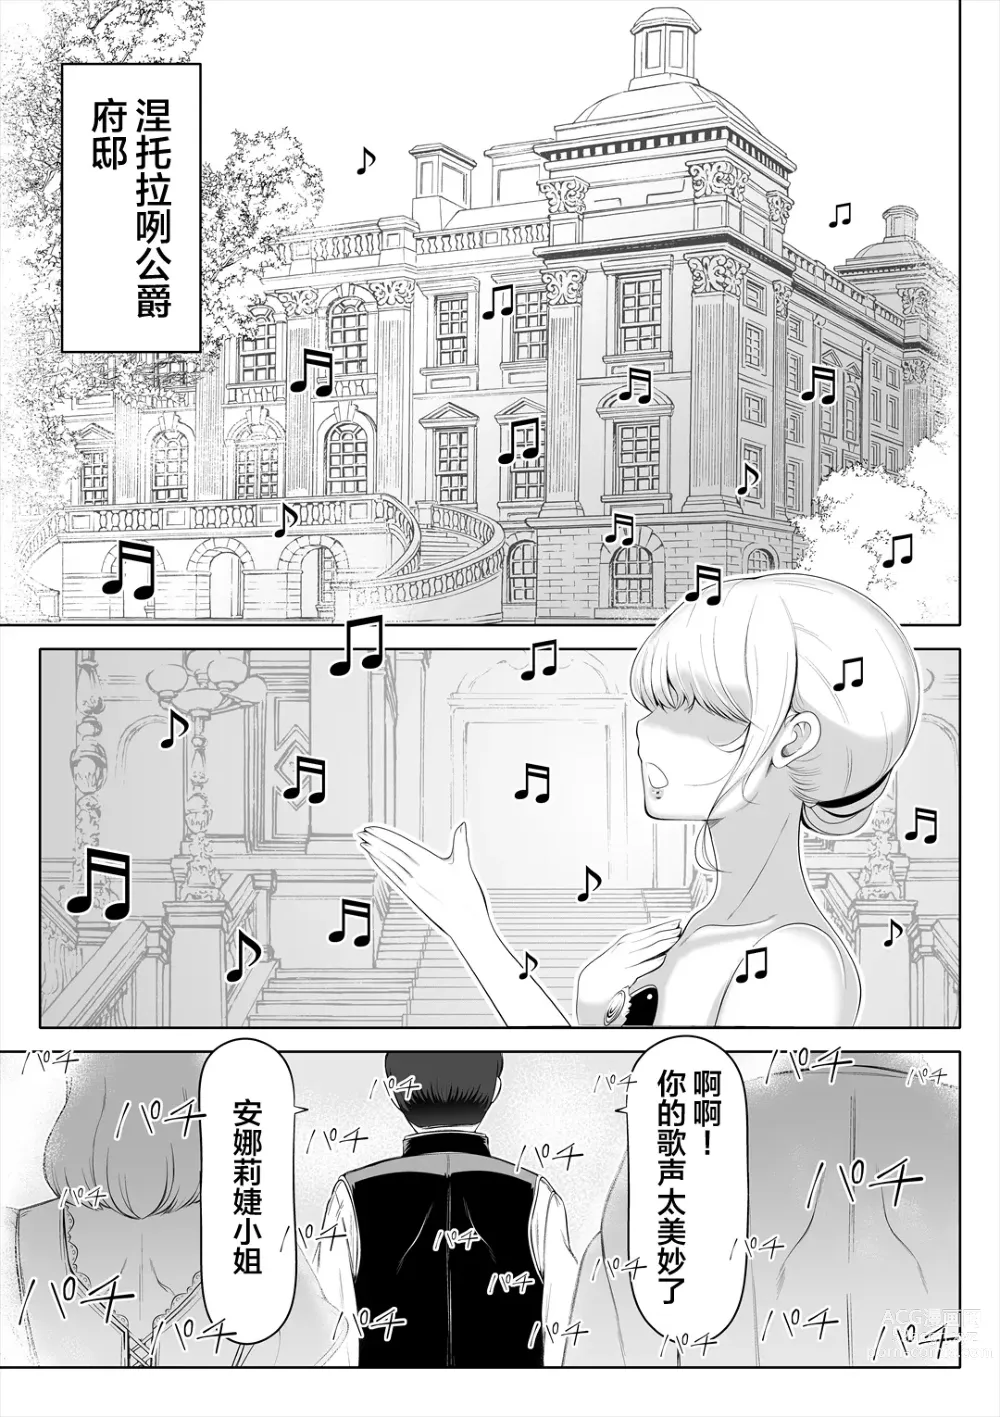 Page 4 of doujinshi Kyousei no hanayome 〜 kegareta chouritsu 〜